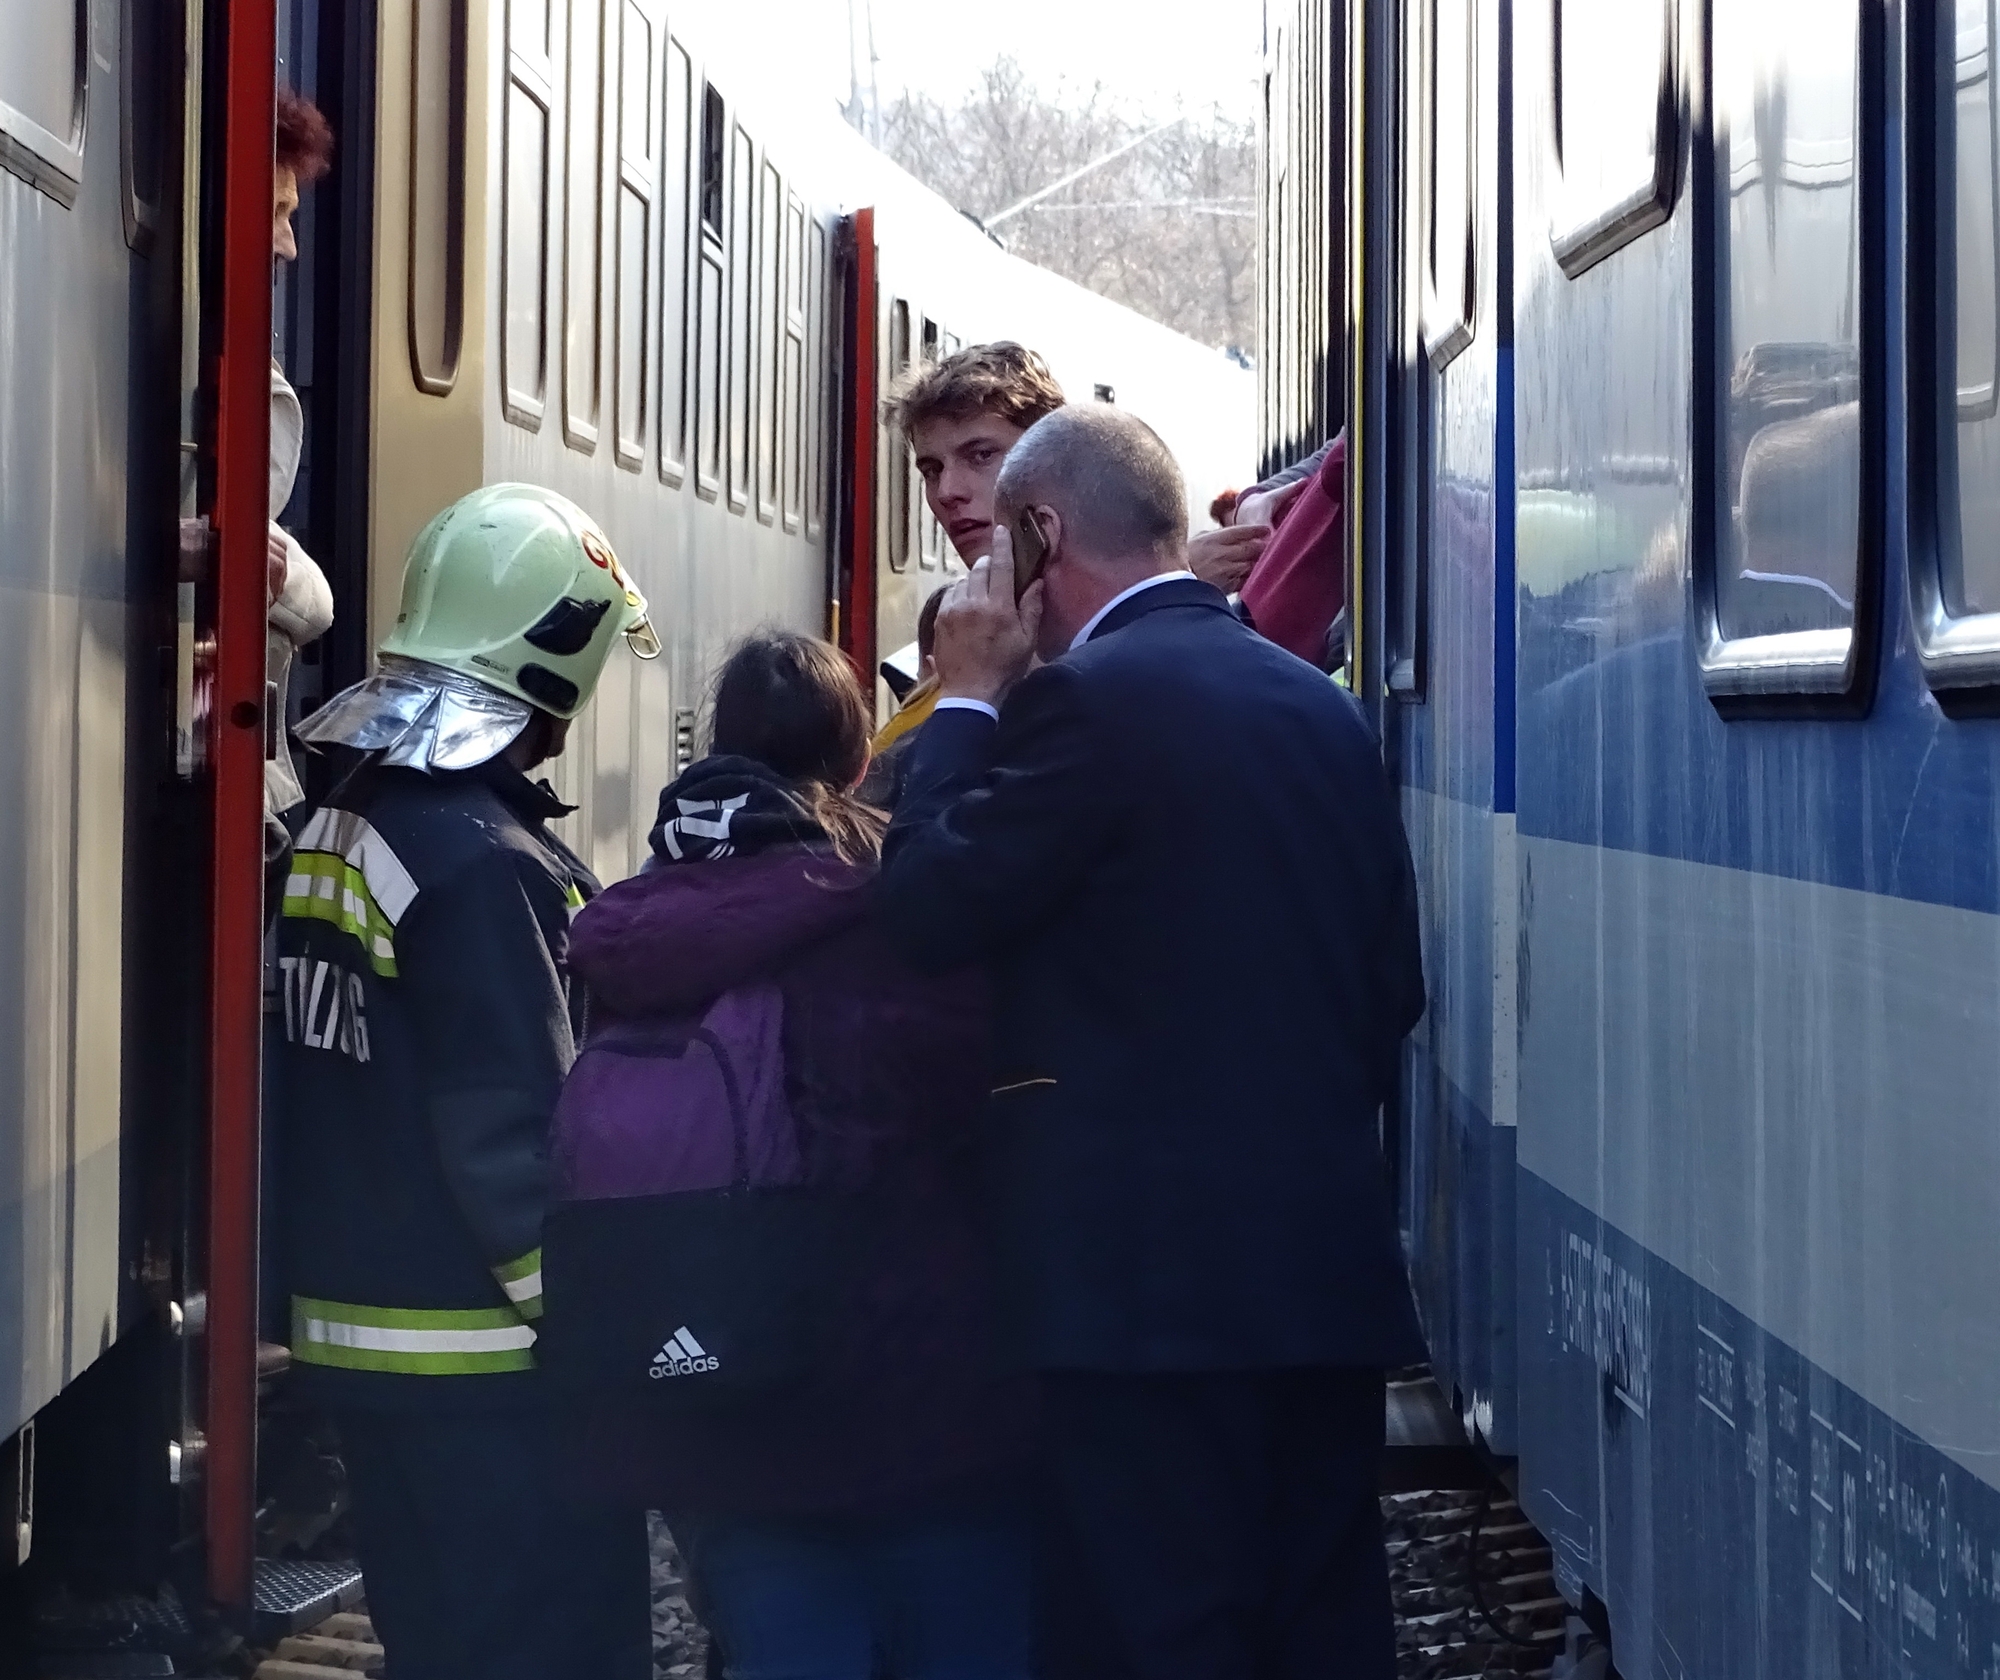 Átszállás nyílt vonalon – a vasúti dolgozók készségesen segítettek az utasoknak